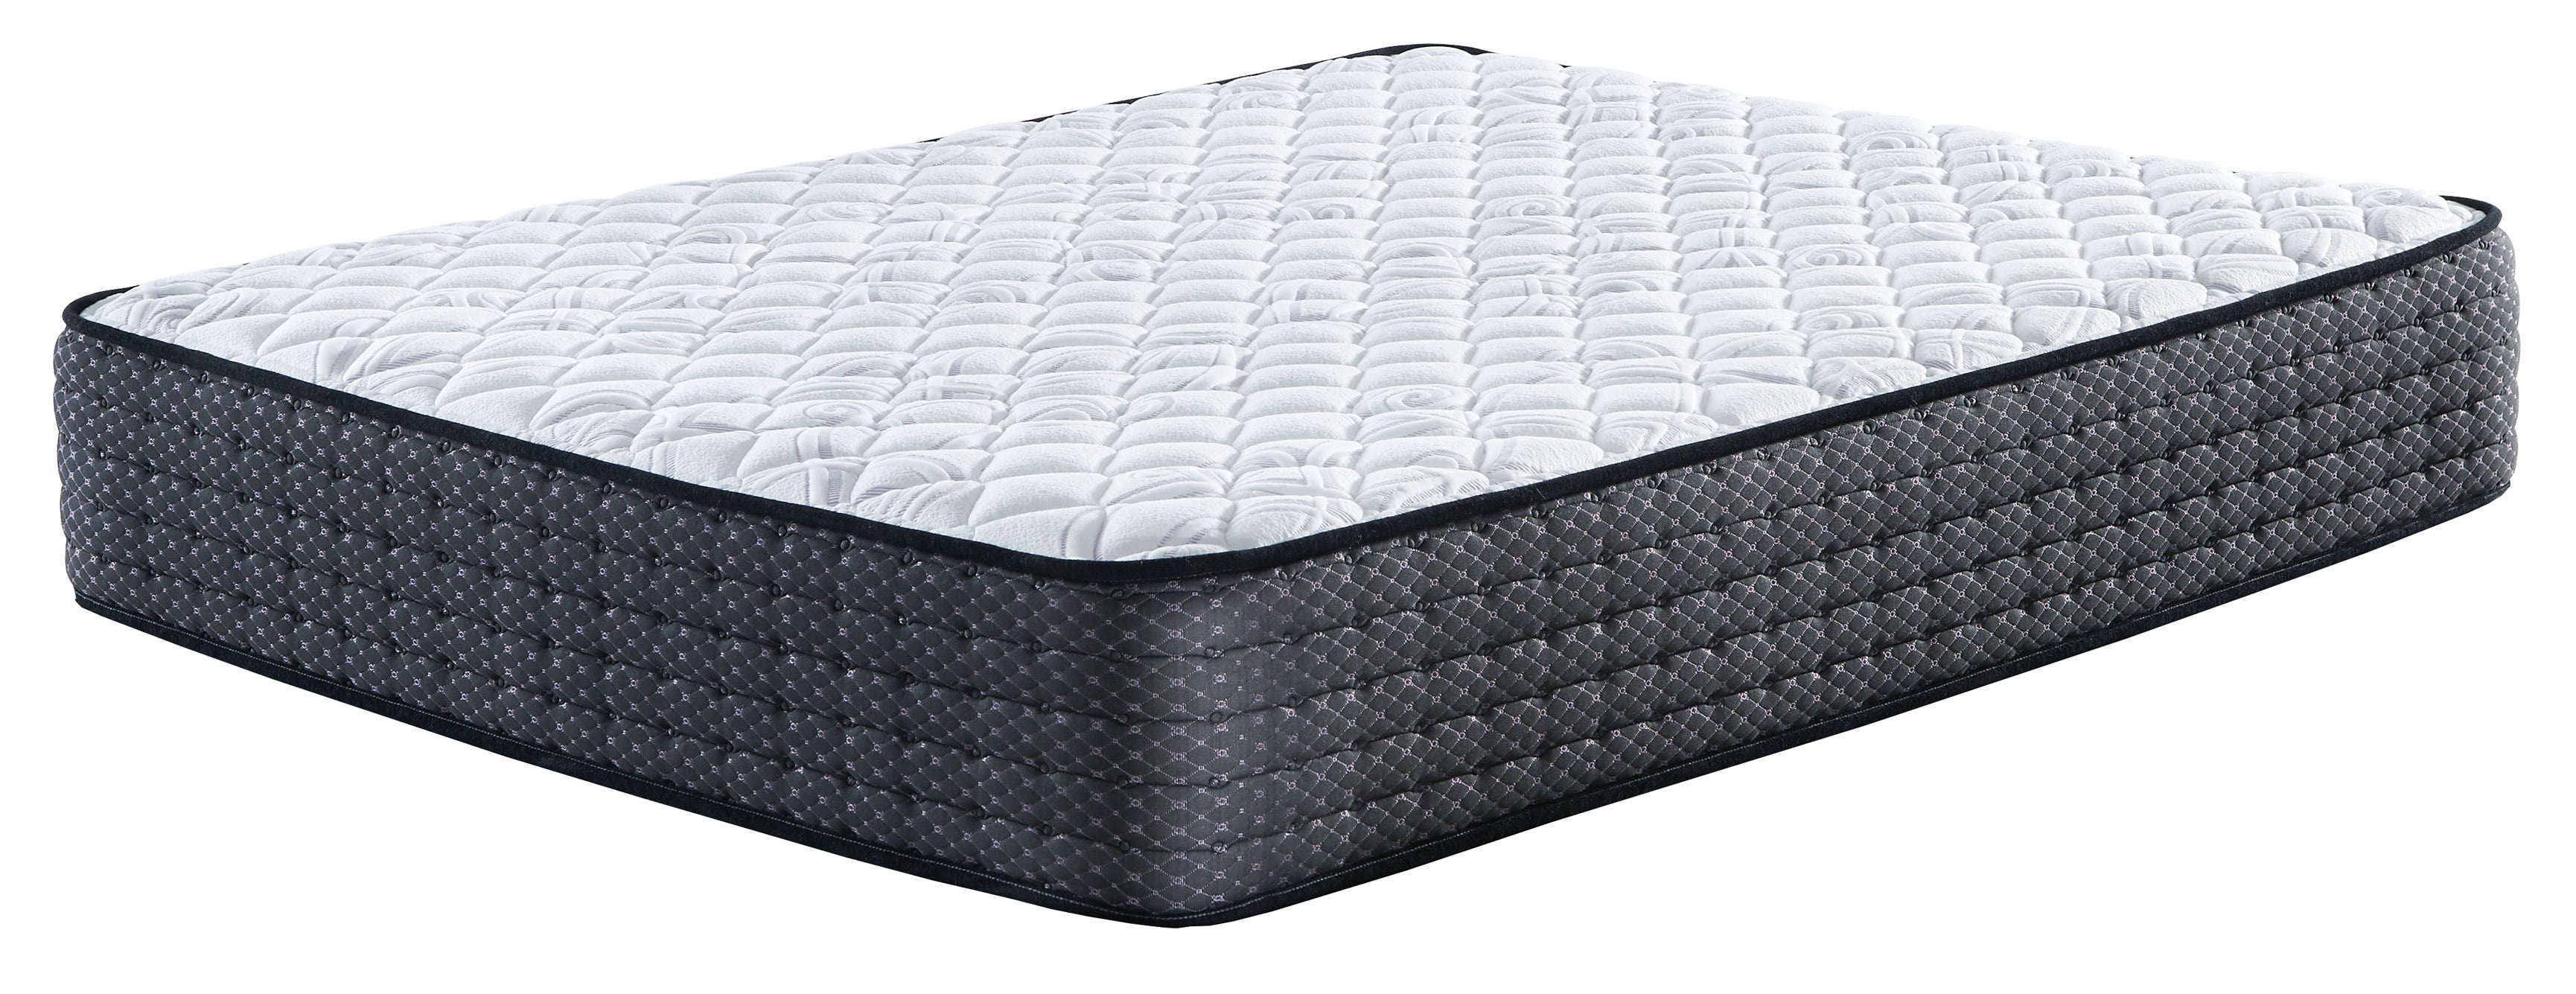 ashley sierra sleep limited edition firm mattress